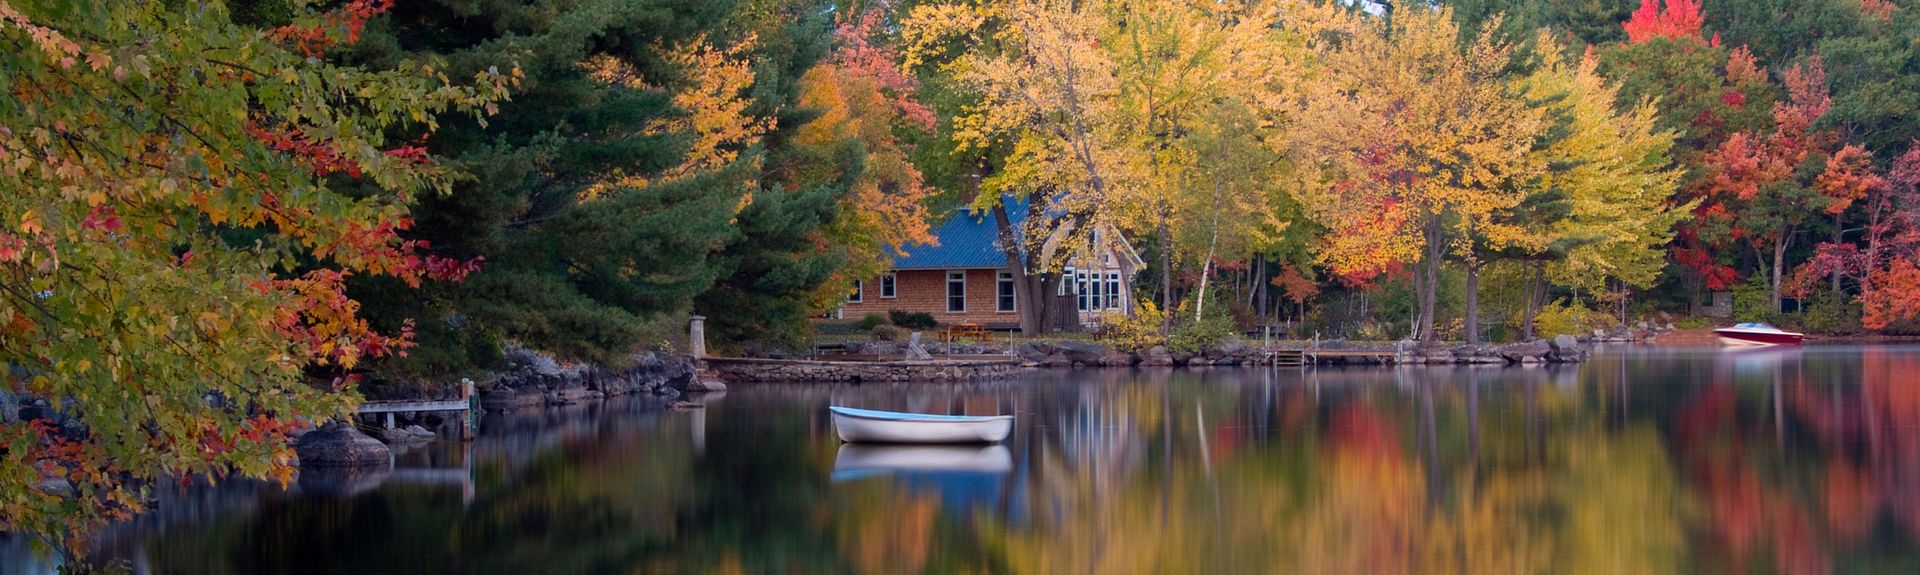 Long Lake, US Vacation Rentals house rentals & more Vrbo